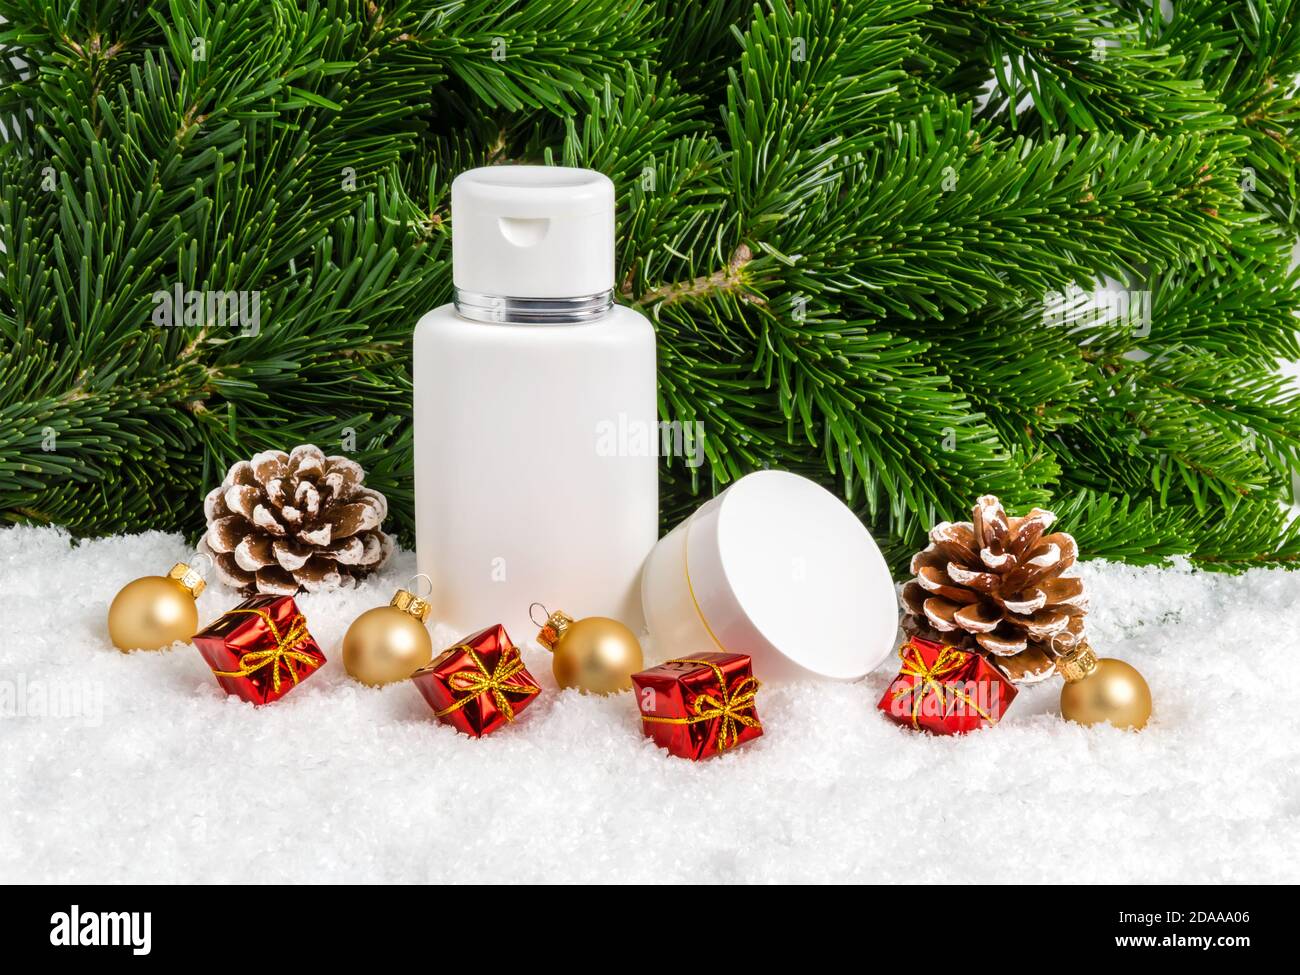 Set von Winter Hautpflege Kosmetik-Produkte im Schnee unter Weihnachtsbaum mit Geschenken, Tannenzapfen und Kugeln. Gesichtscreme Glas und Bodylotion Flasche Stockfoto